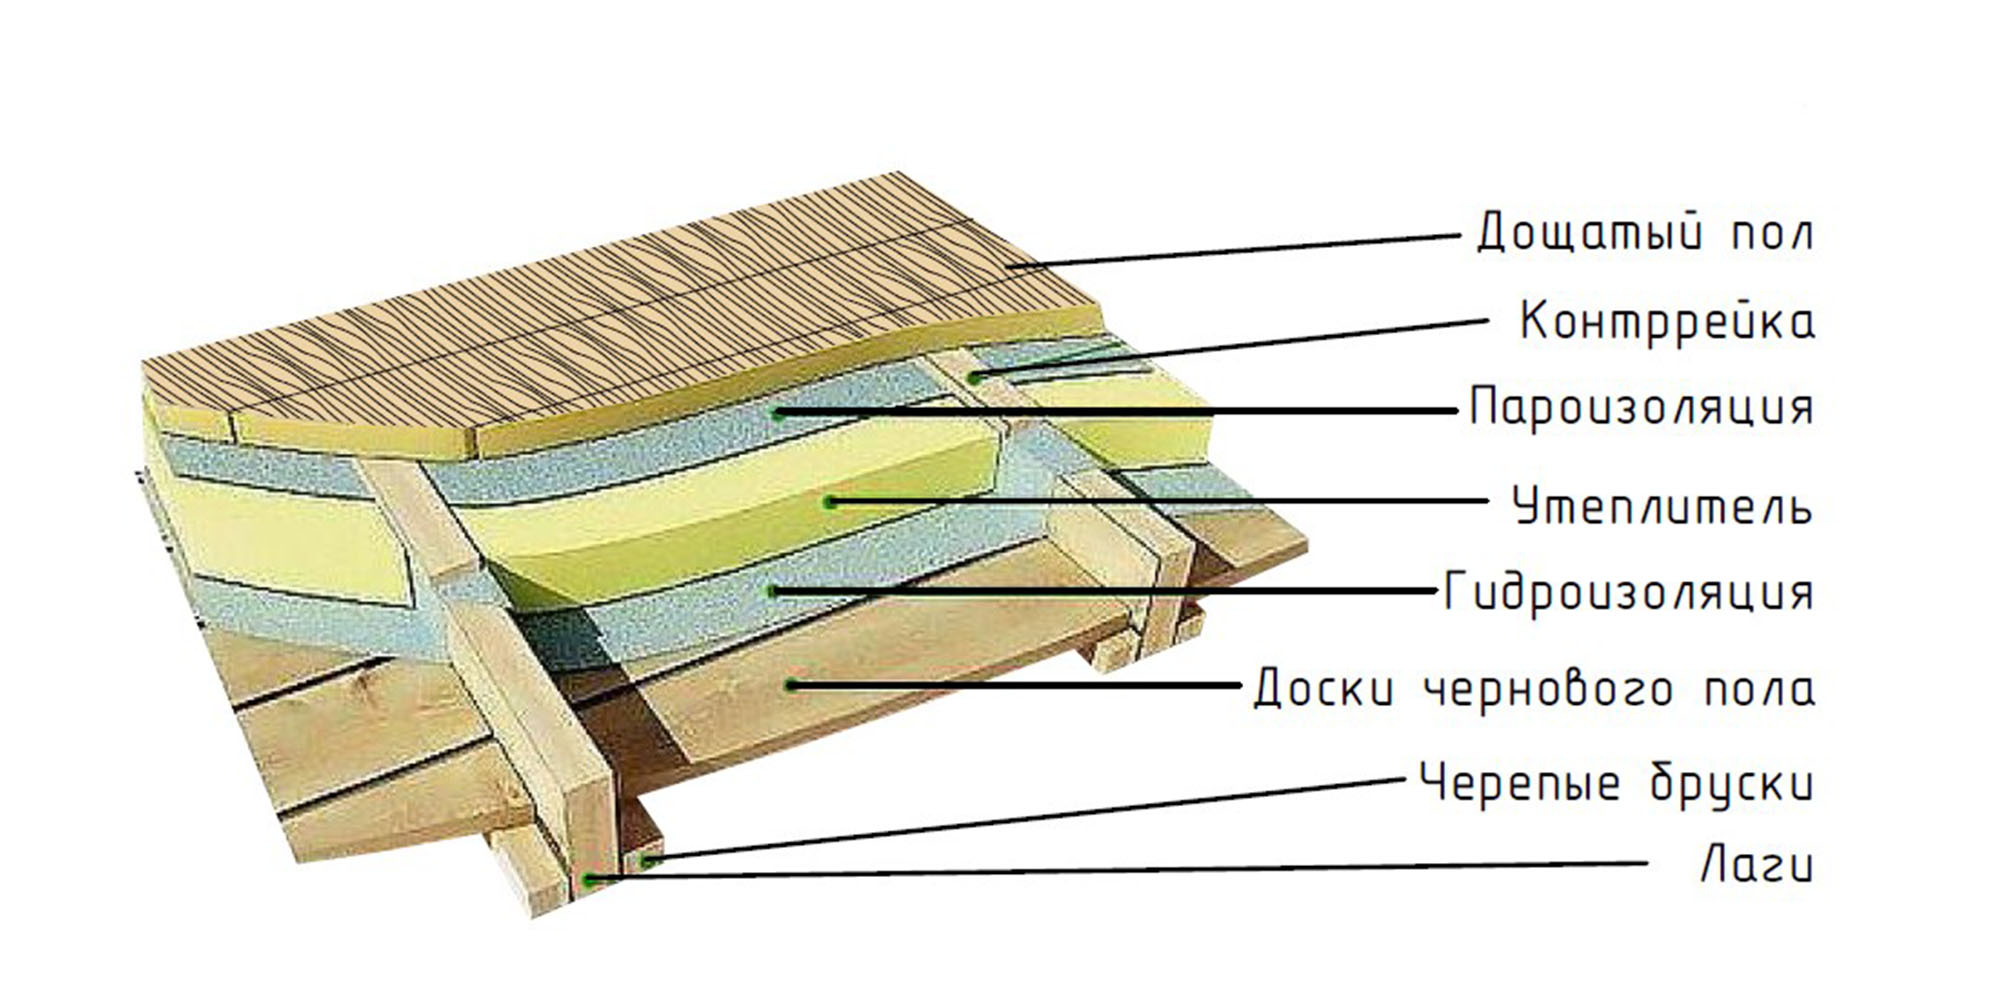 Как утеплить пол в деревянном доме снизу, не вскрывая пол - утепление подпола: керамзитом, пенофолом и изонолом в частном